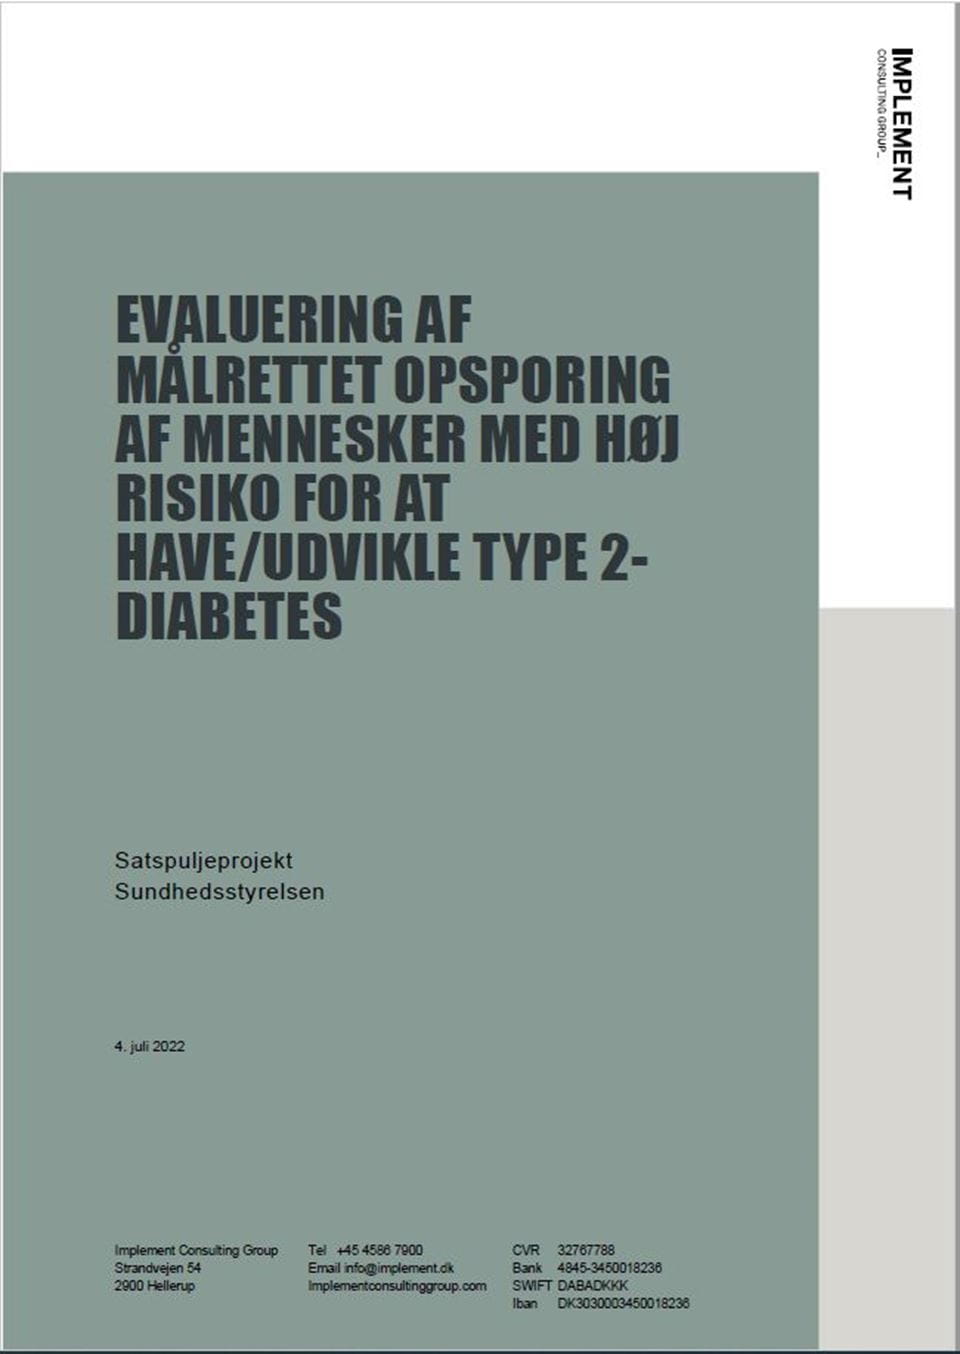 Evaluering af målrettet opsporing af mennesker med høj risiko for at have/udvikle type 2-diabetes